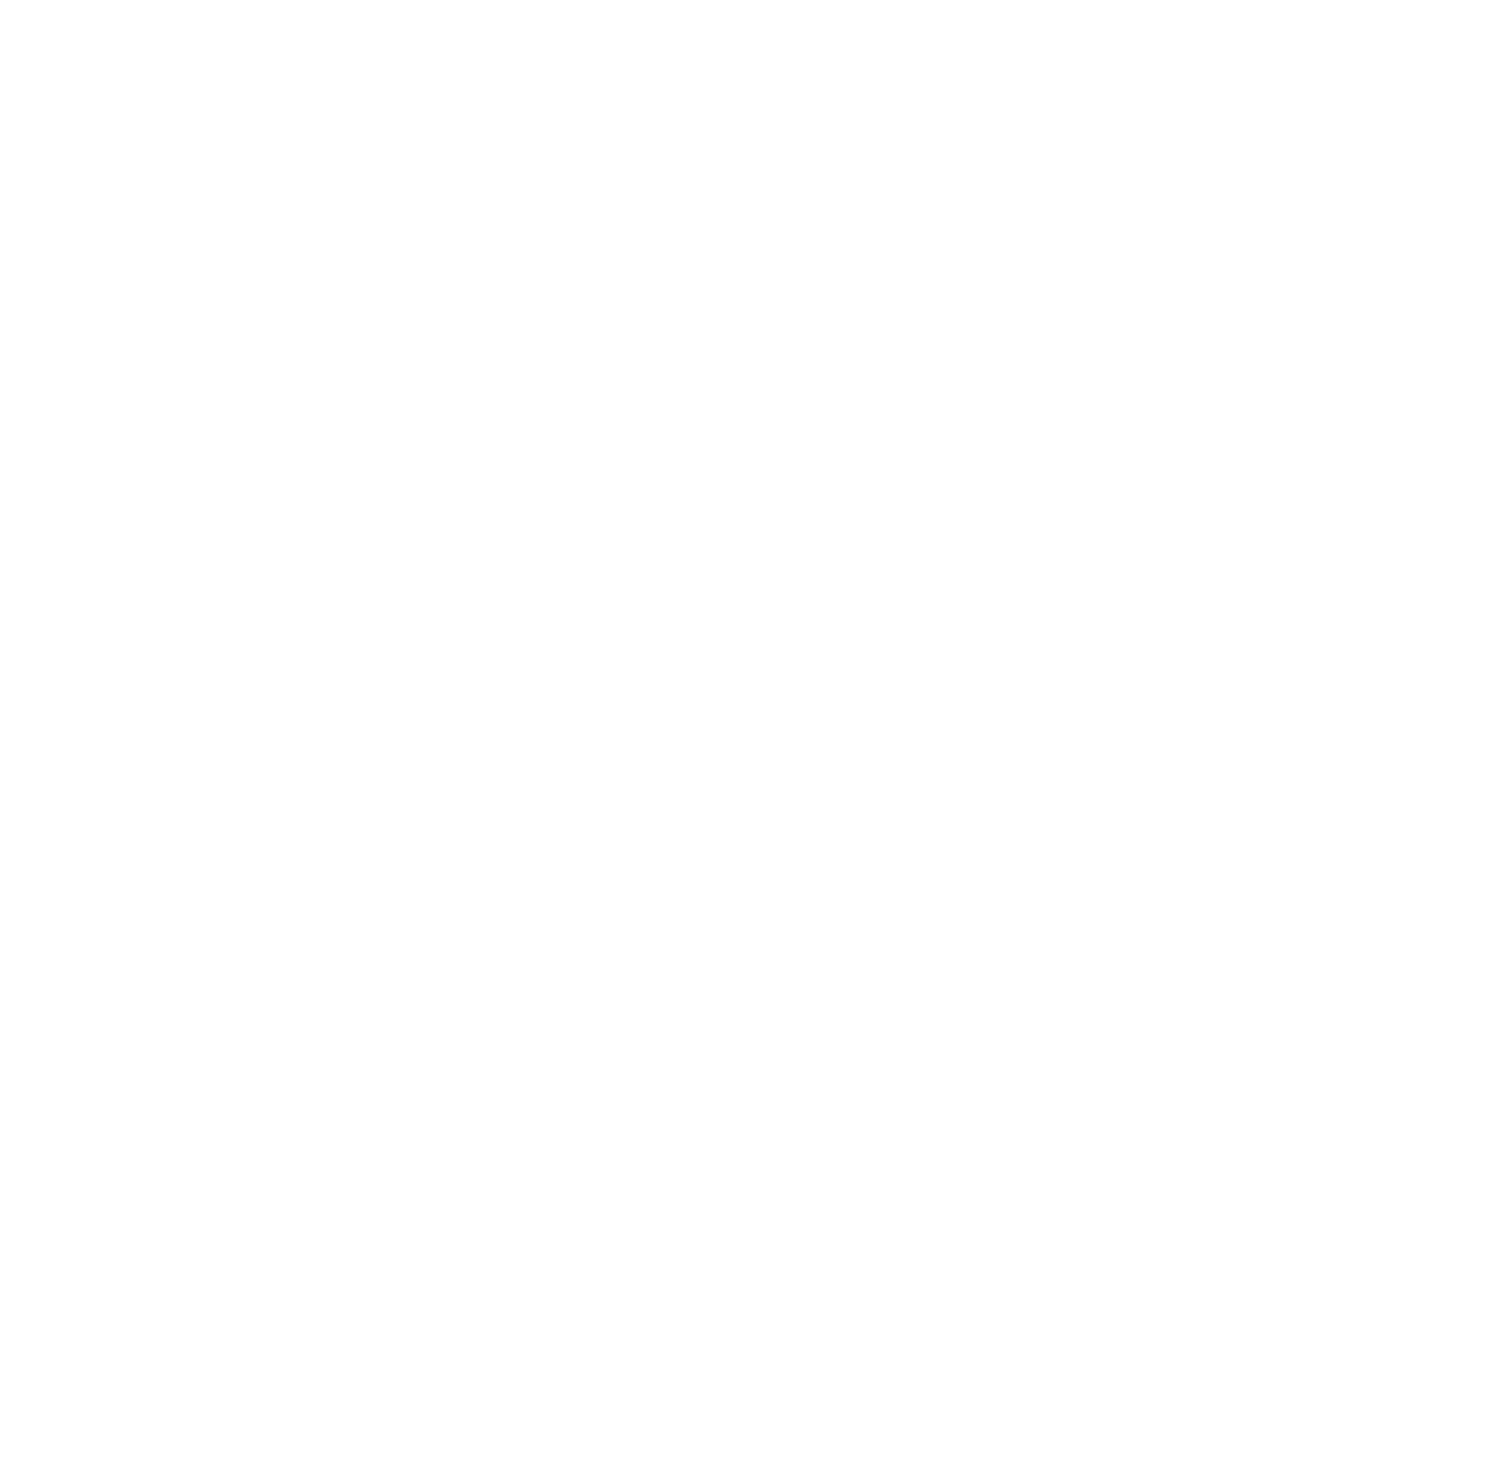 Amplifon logo for dark backgrounds (transparent PNG)